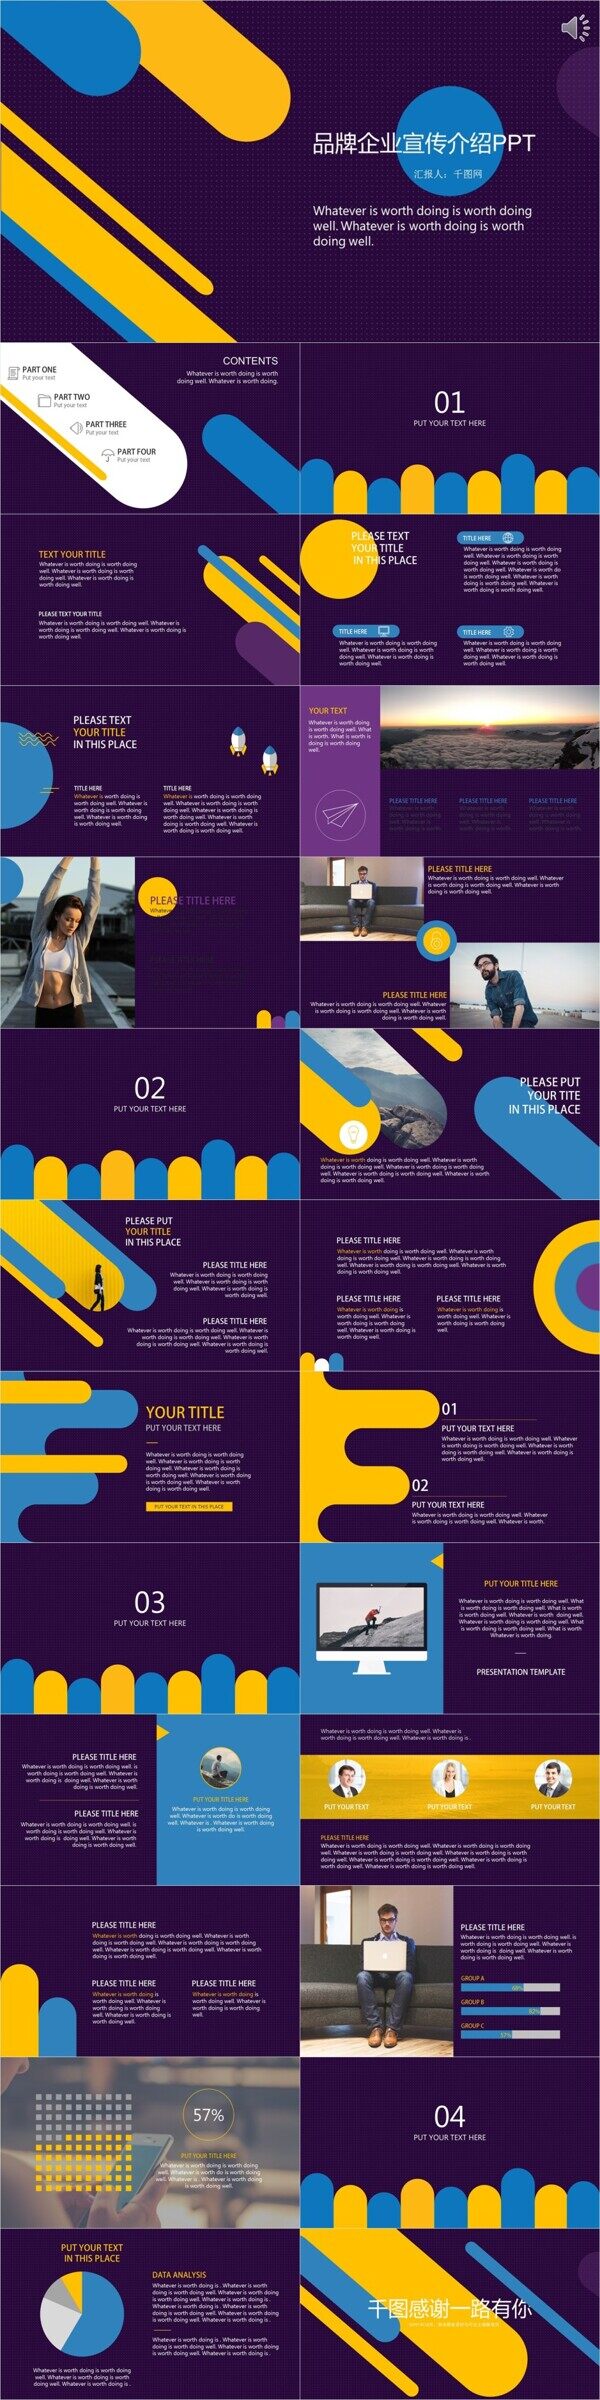 紫色欧美品牌企业宣传介绍PPT模板